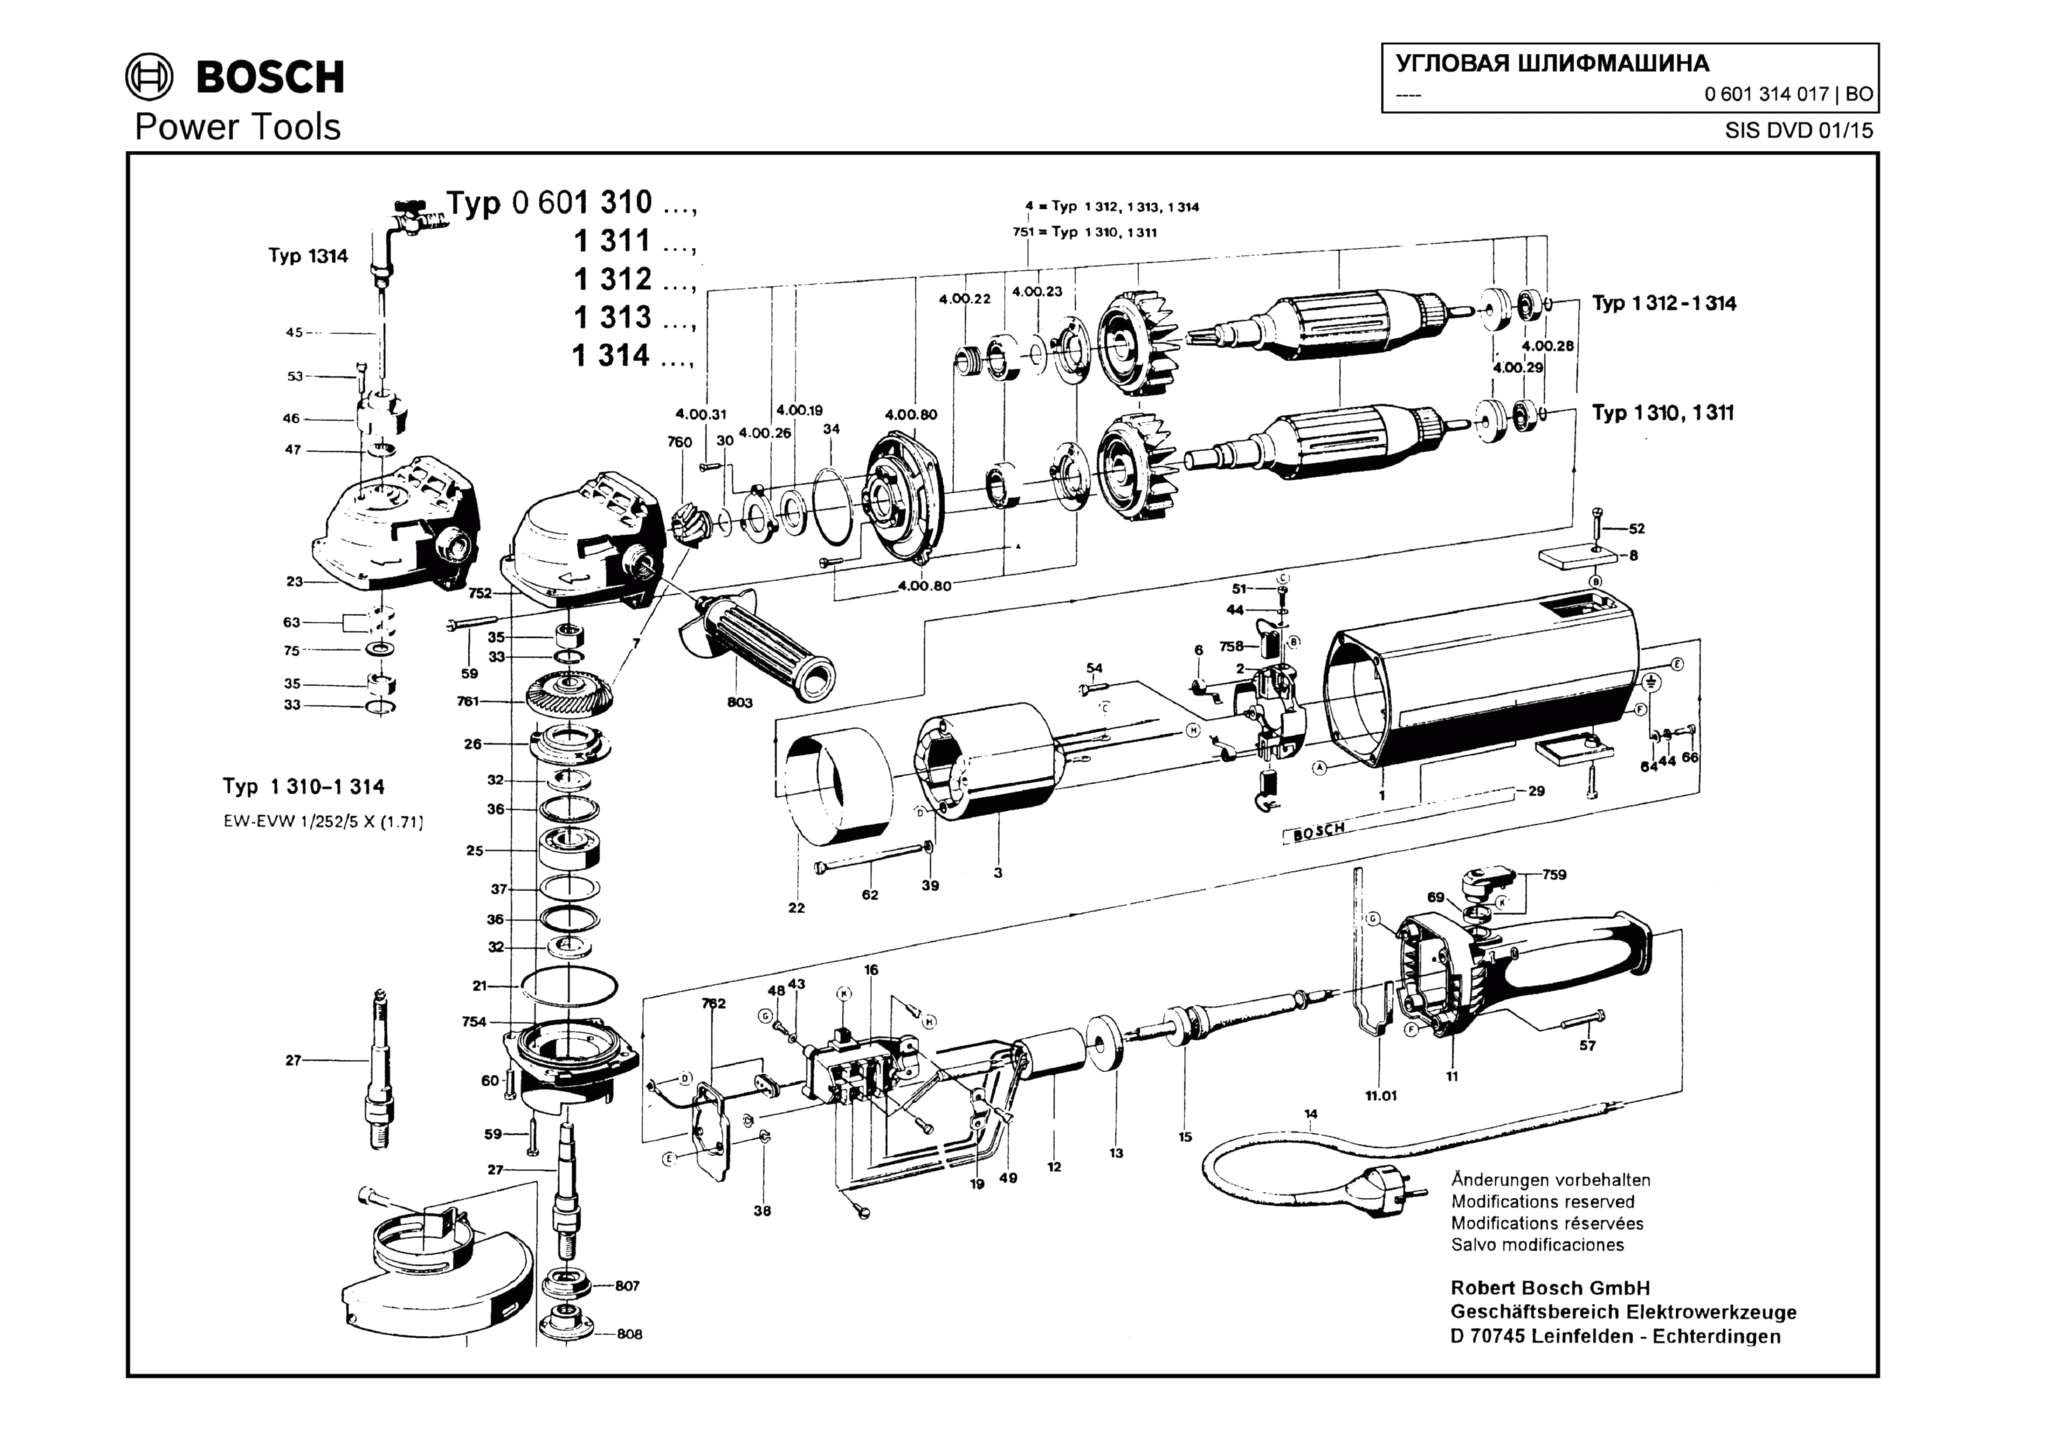 Запчасти, схема и деталировка Bosch (ТИП 0601314017)